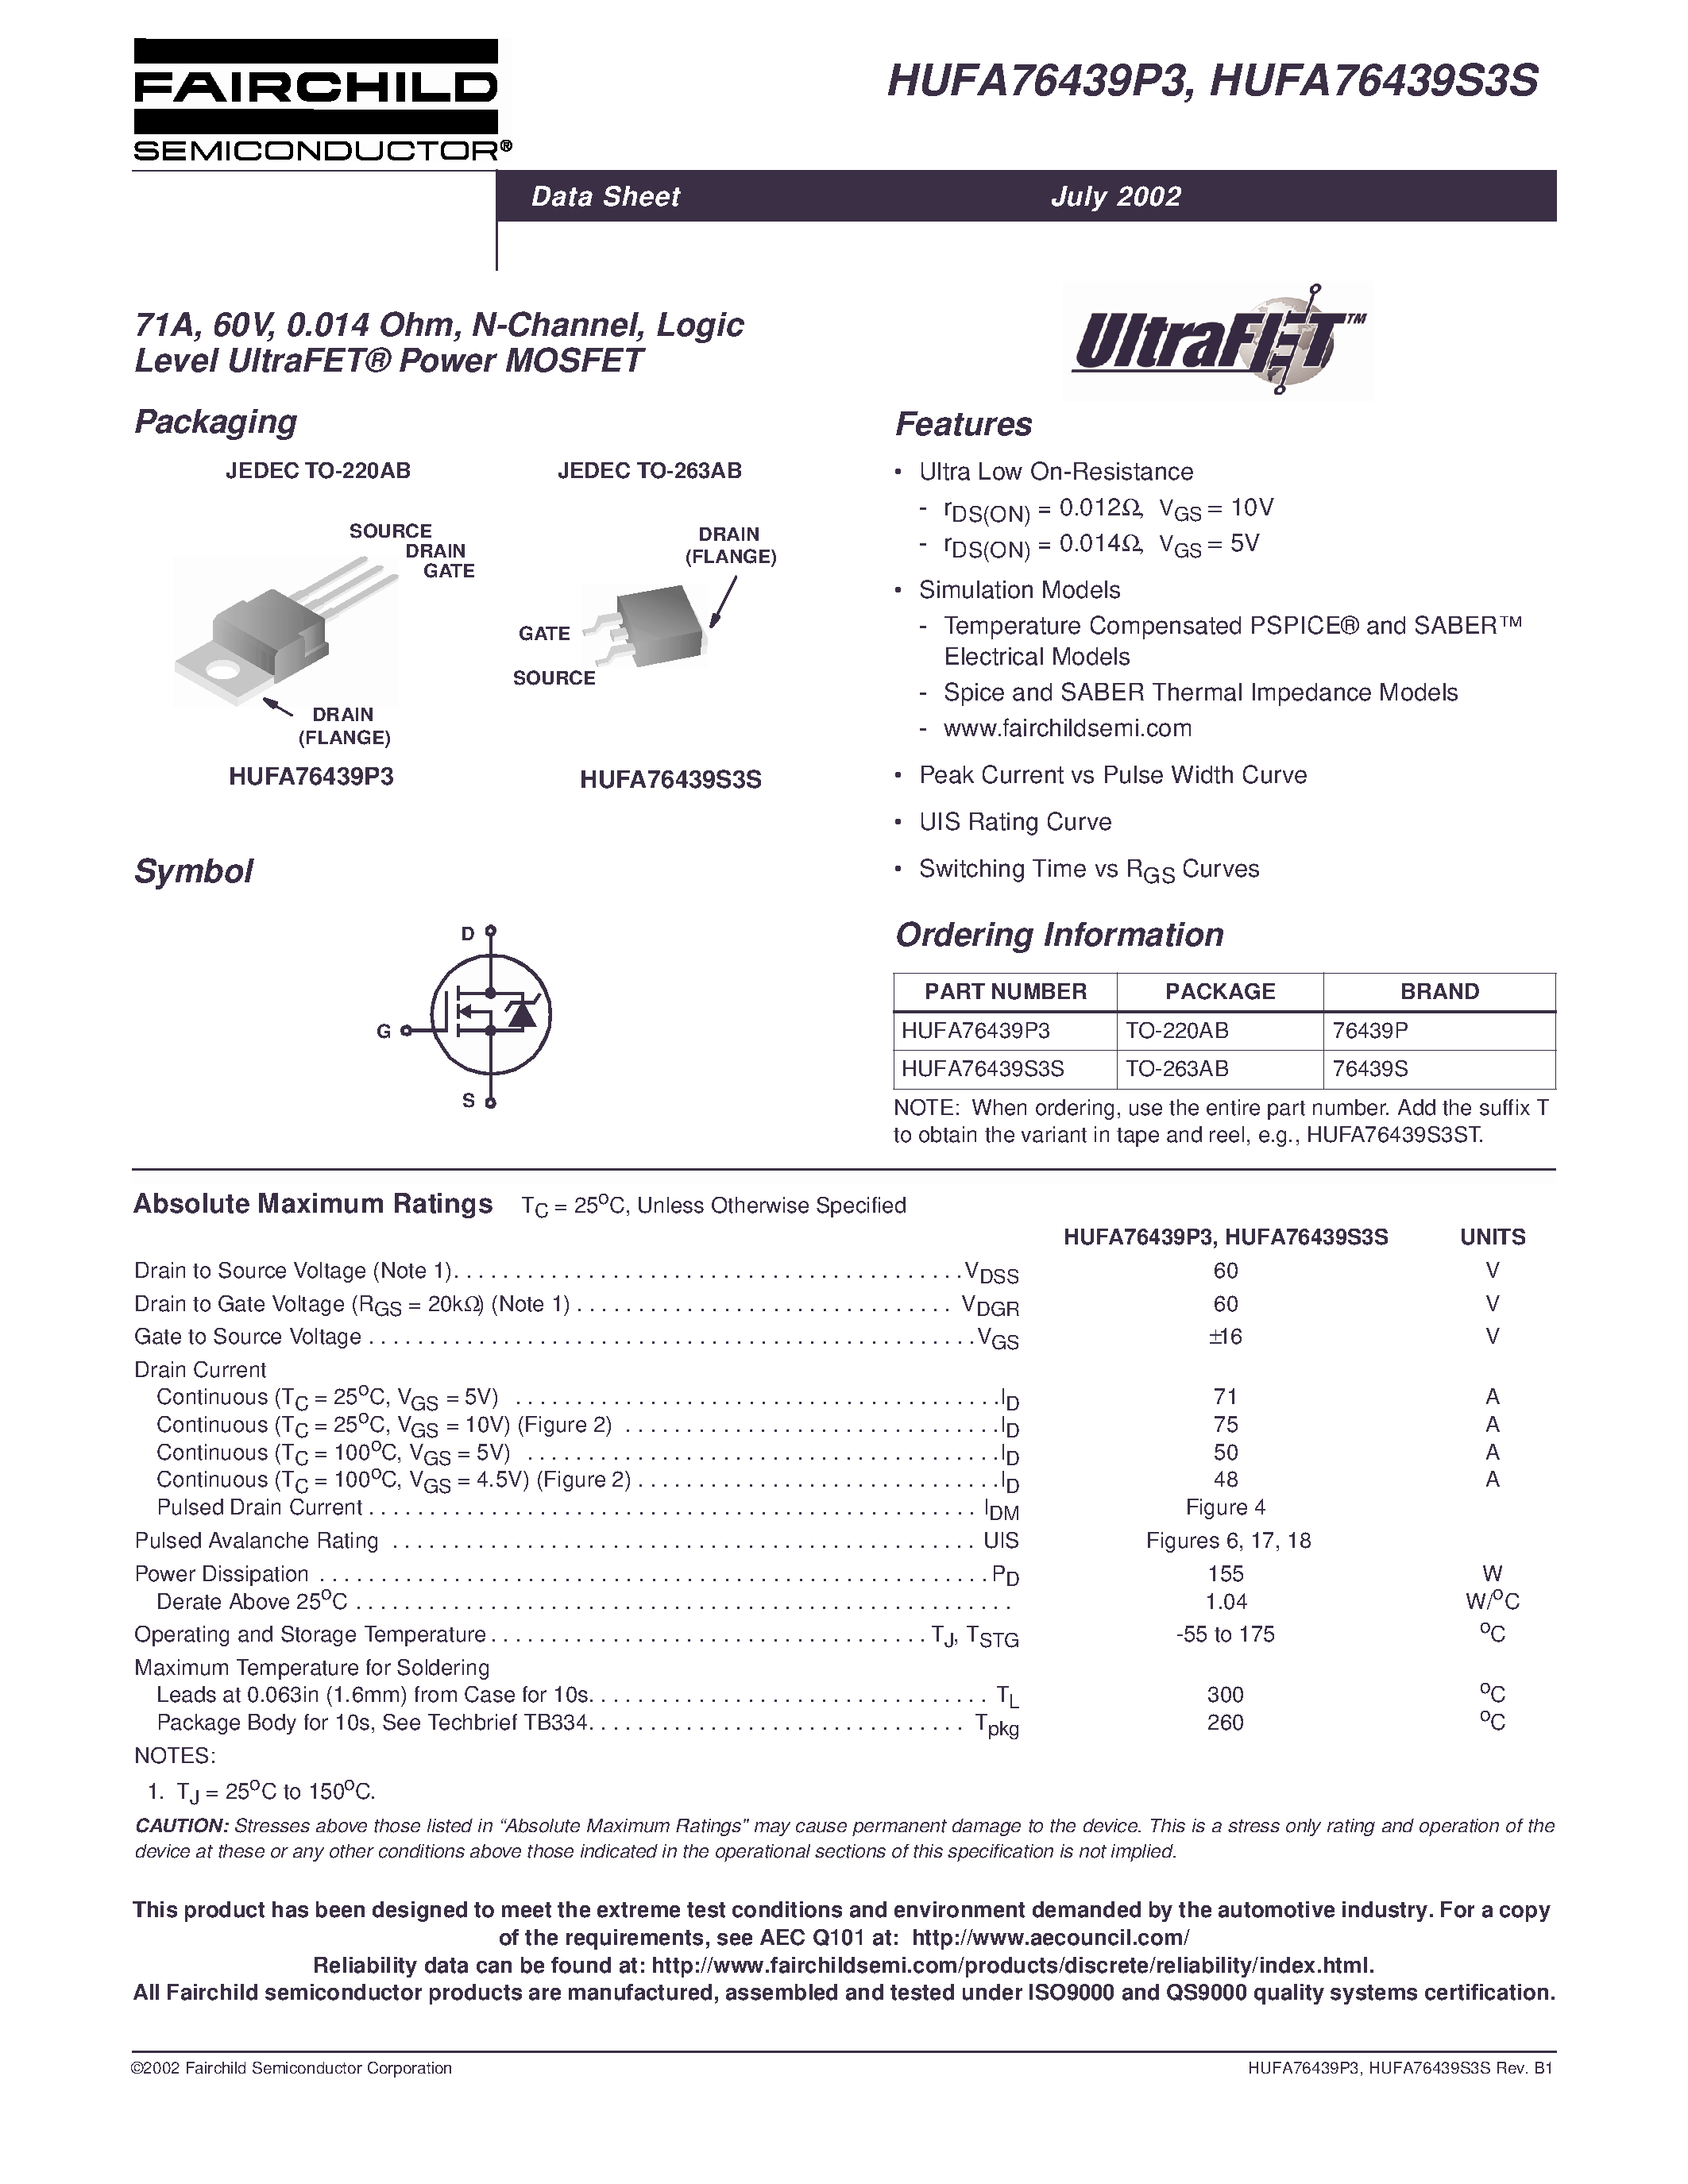 Даташит HUFA76439P3 - 71A/ 60V/ 0.014 Ohm/ N-Channel/ Logic Level UltraFET Power MOSFET страница 1